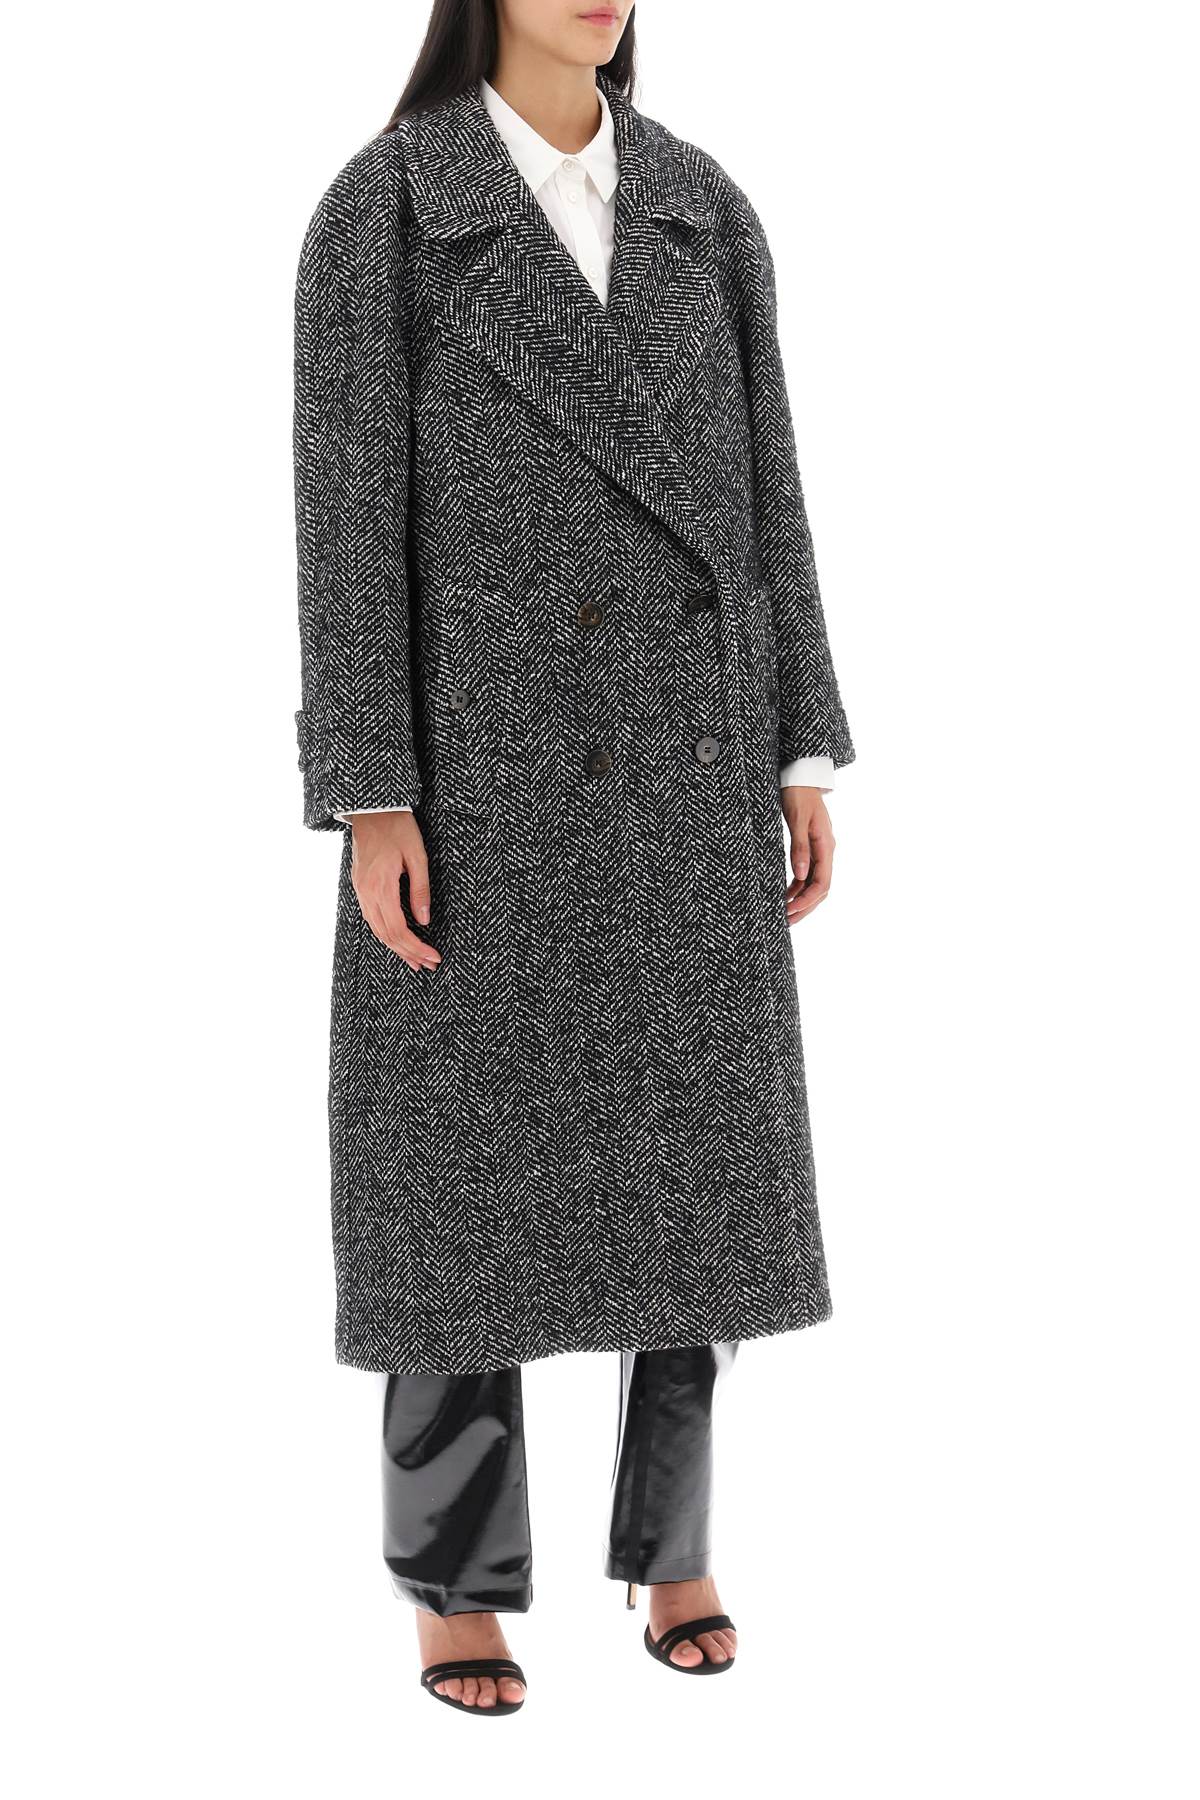 Mvp wardrobe oversized herringbone coat-1